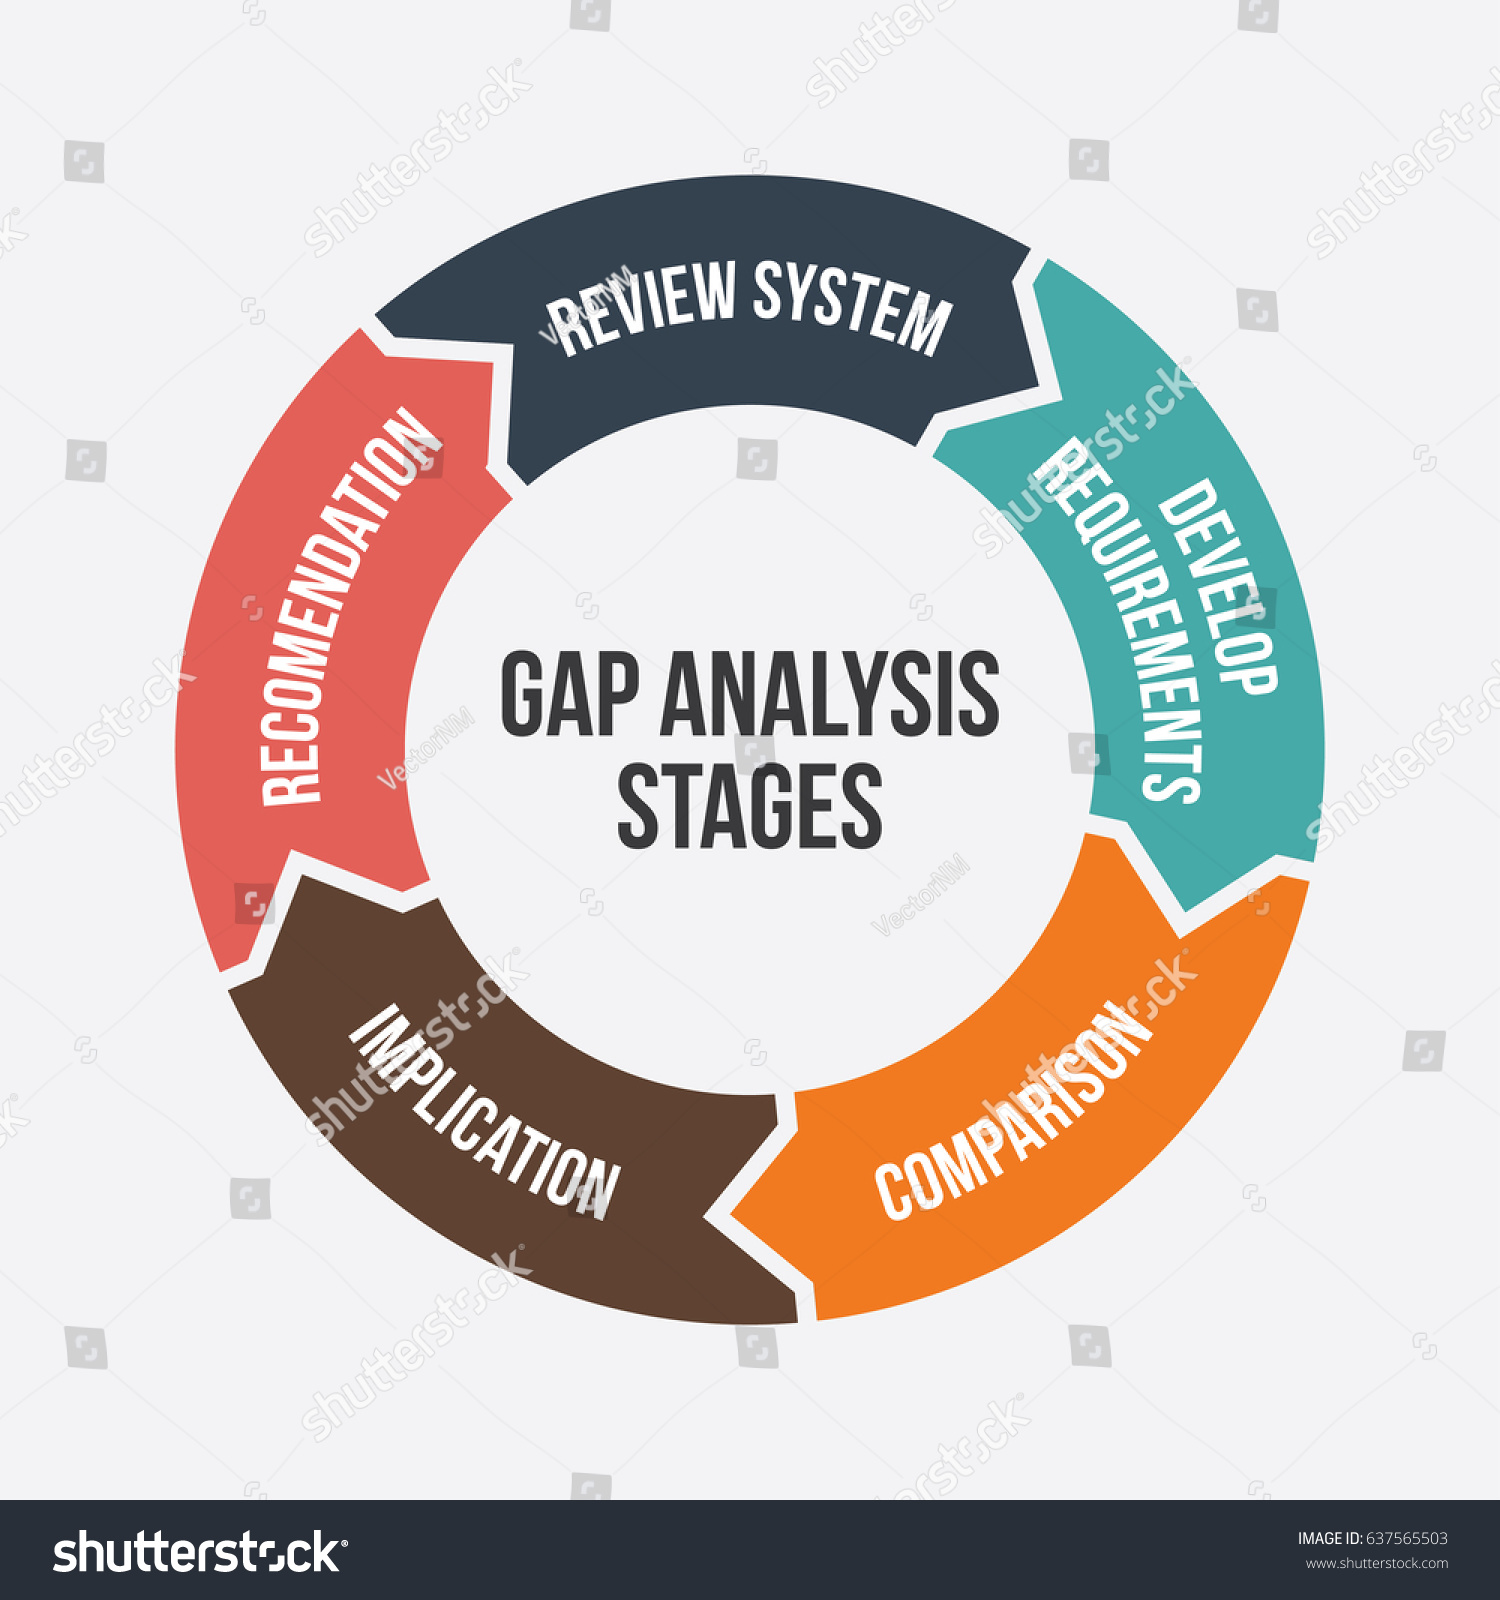 Gap Analysis Types